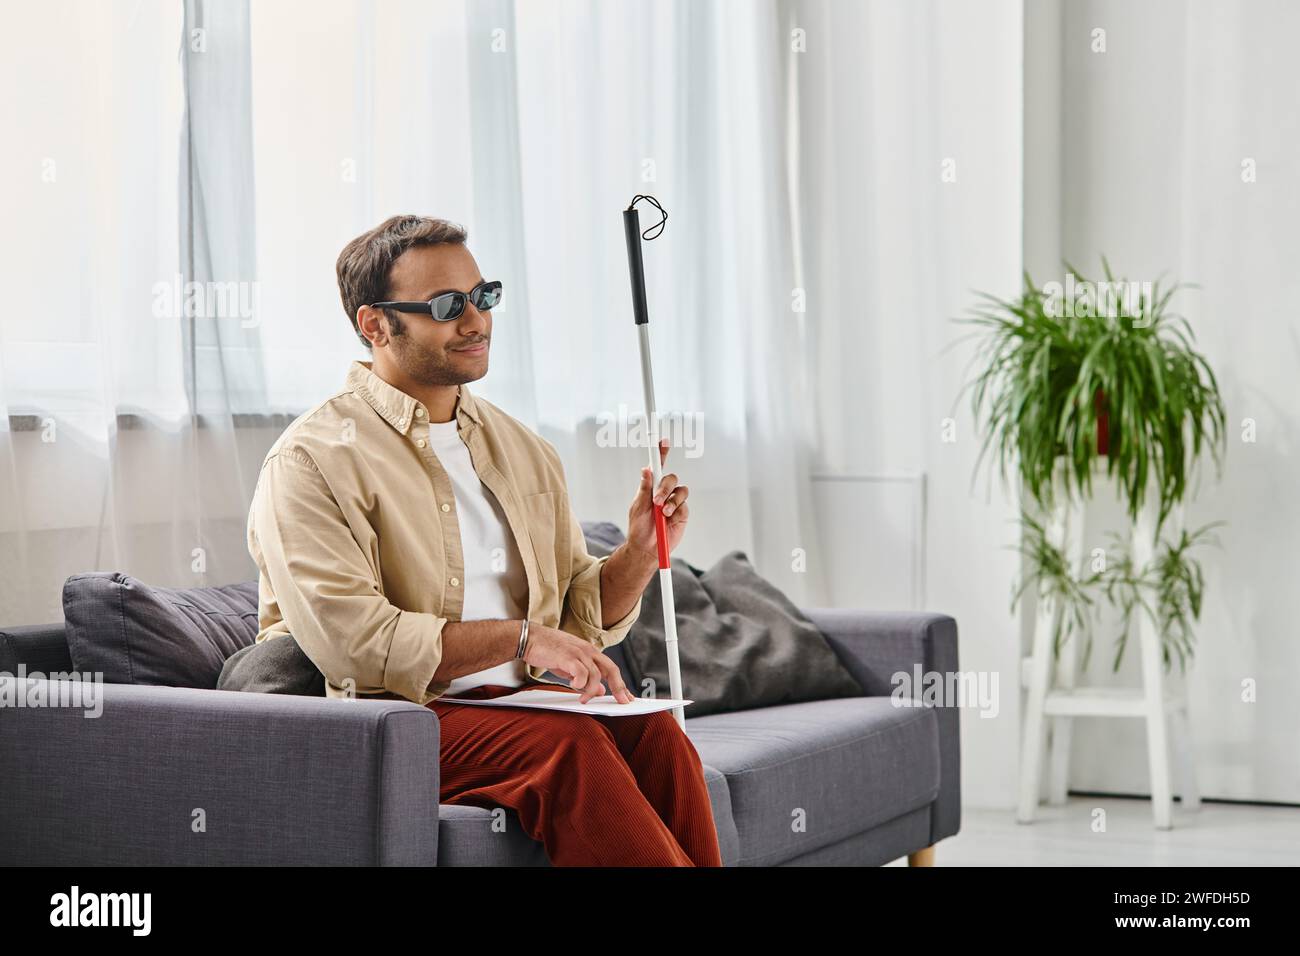 gioioso indiano con disabilità visiva con occhiali e bastone da passeggio che legge il codice braille Foto Stock